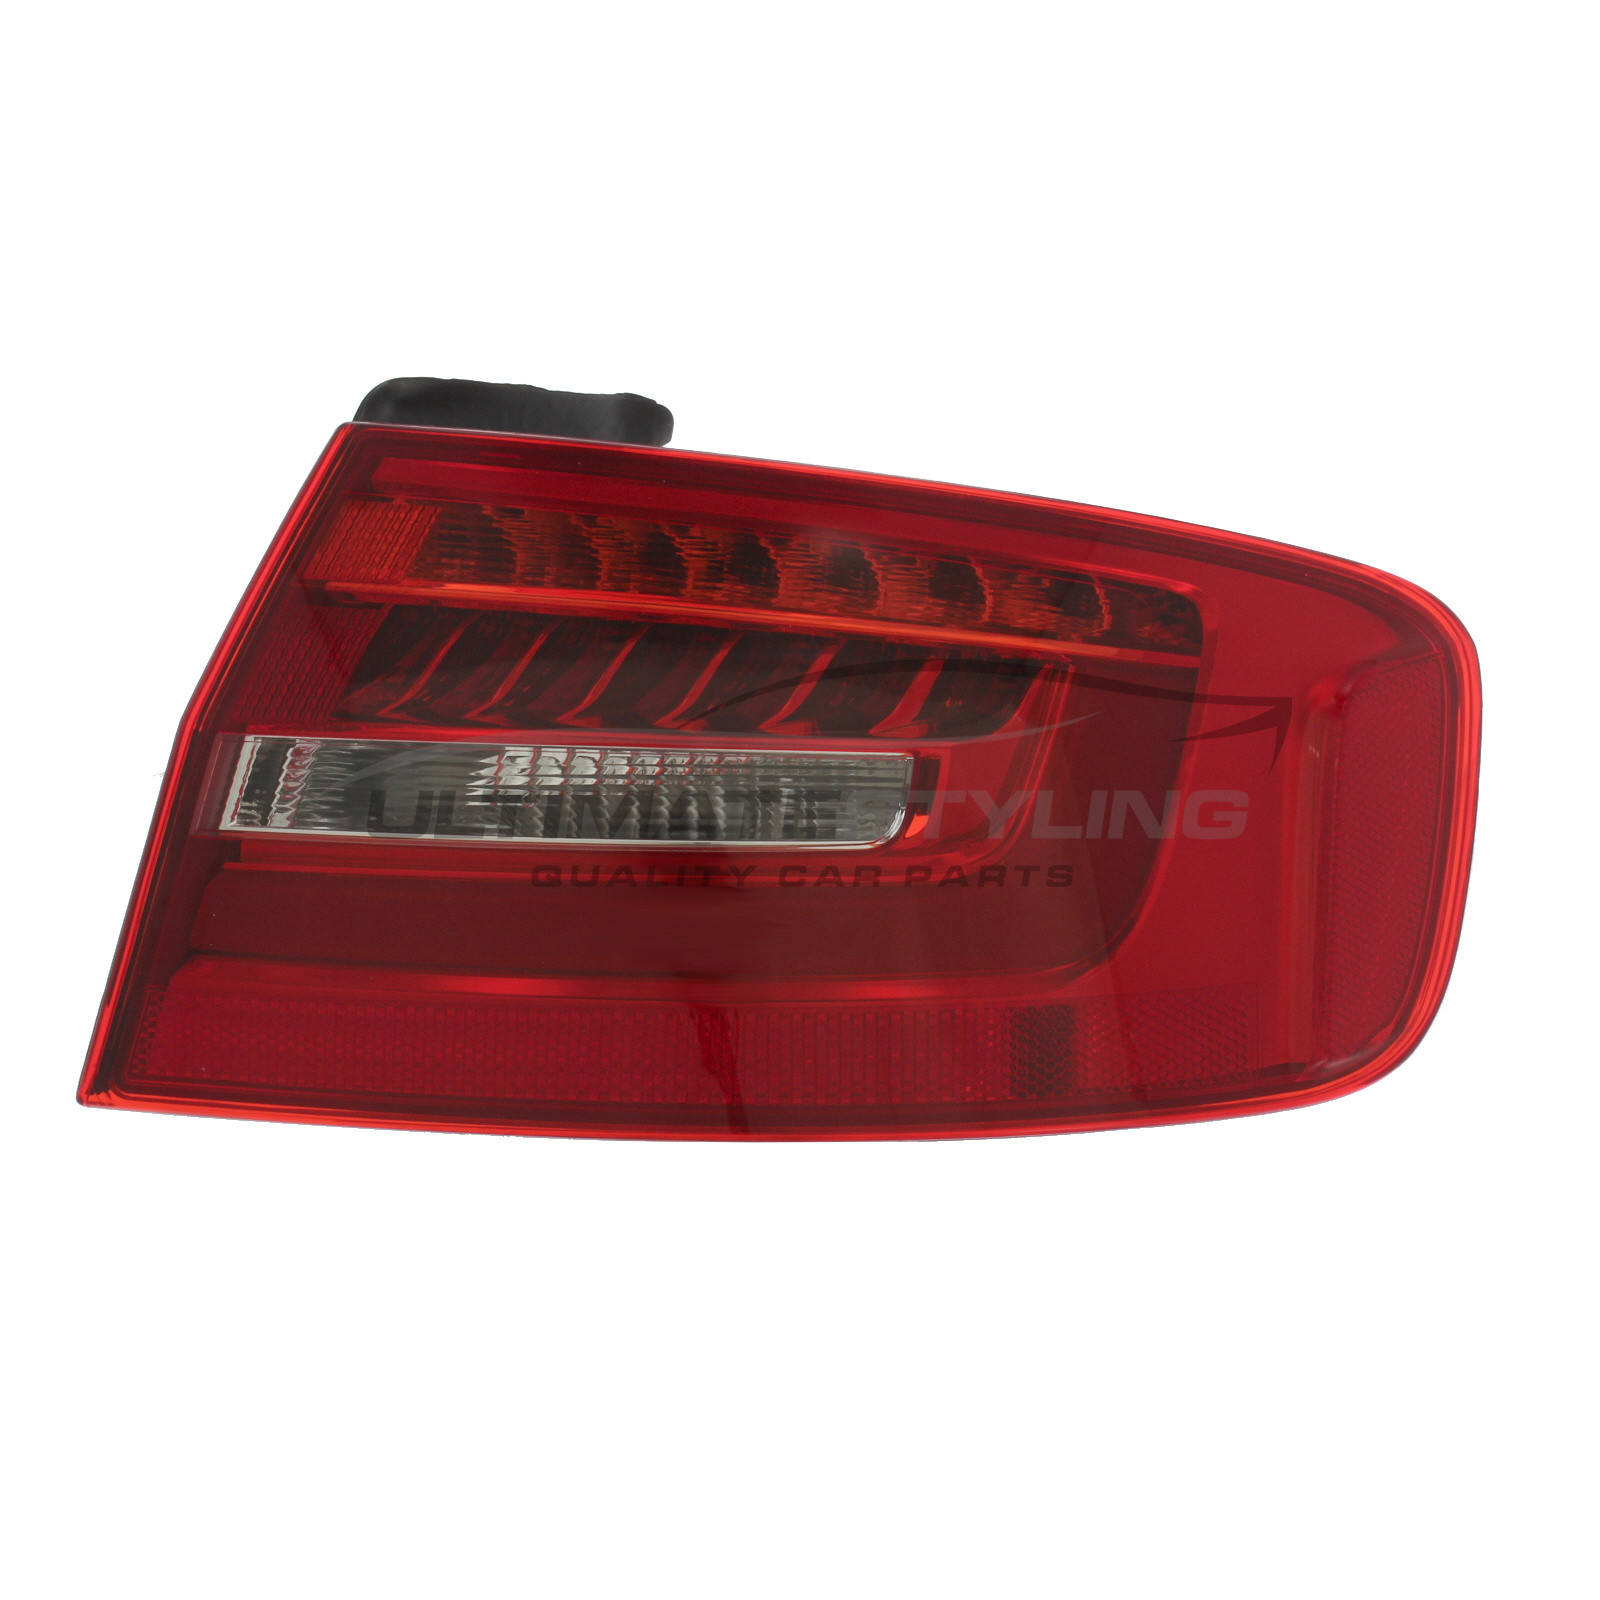 Rear Light / Tail Light for Audi S4